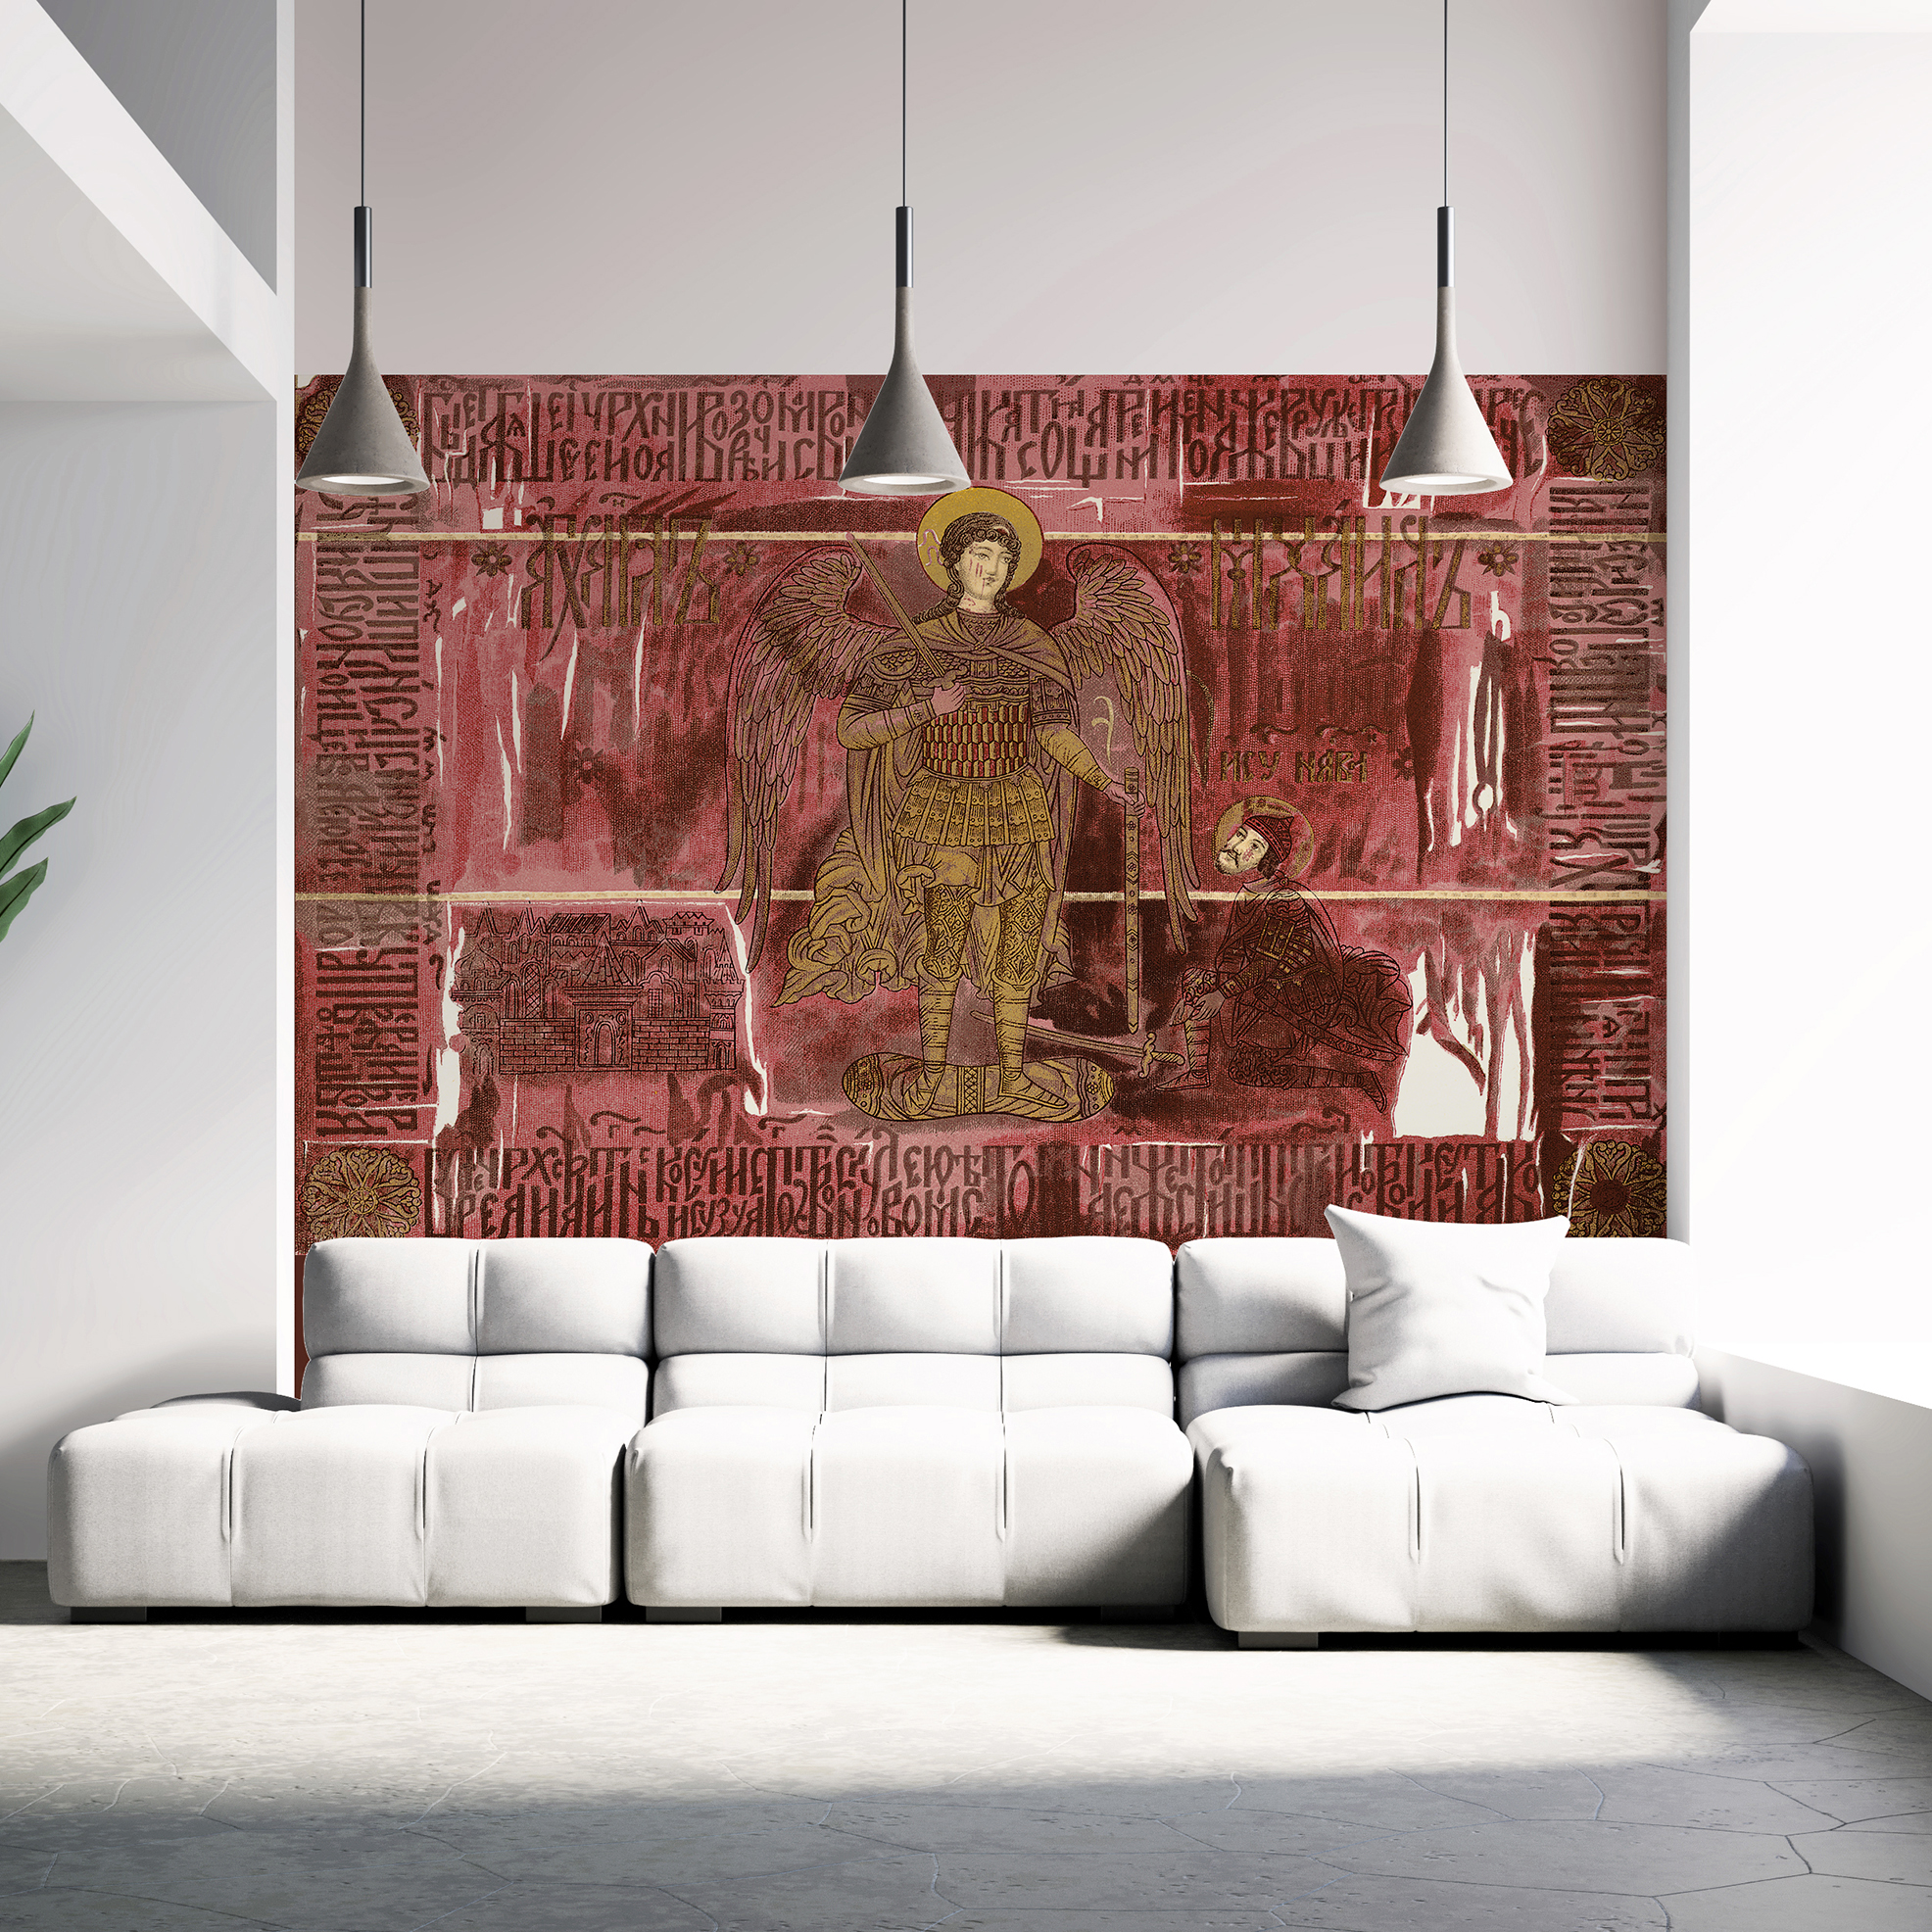 In Rot und Gold stellt die Ikone alle anderen Tapeten in den Schatten. Geruchneutrale Produkte von Hohenberger fördern das Lebensgefühl in ihrem Zuhause  